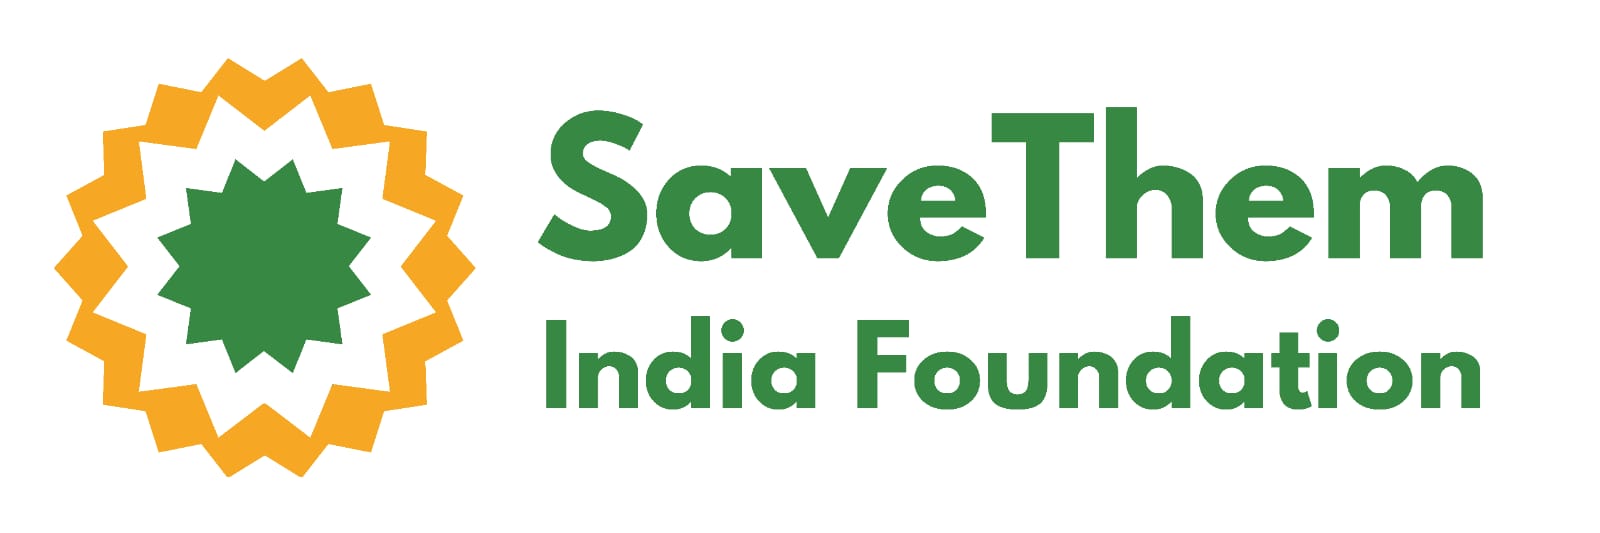 SAVETHEM INDIA FOUNDATION